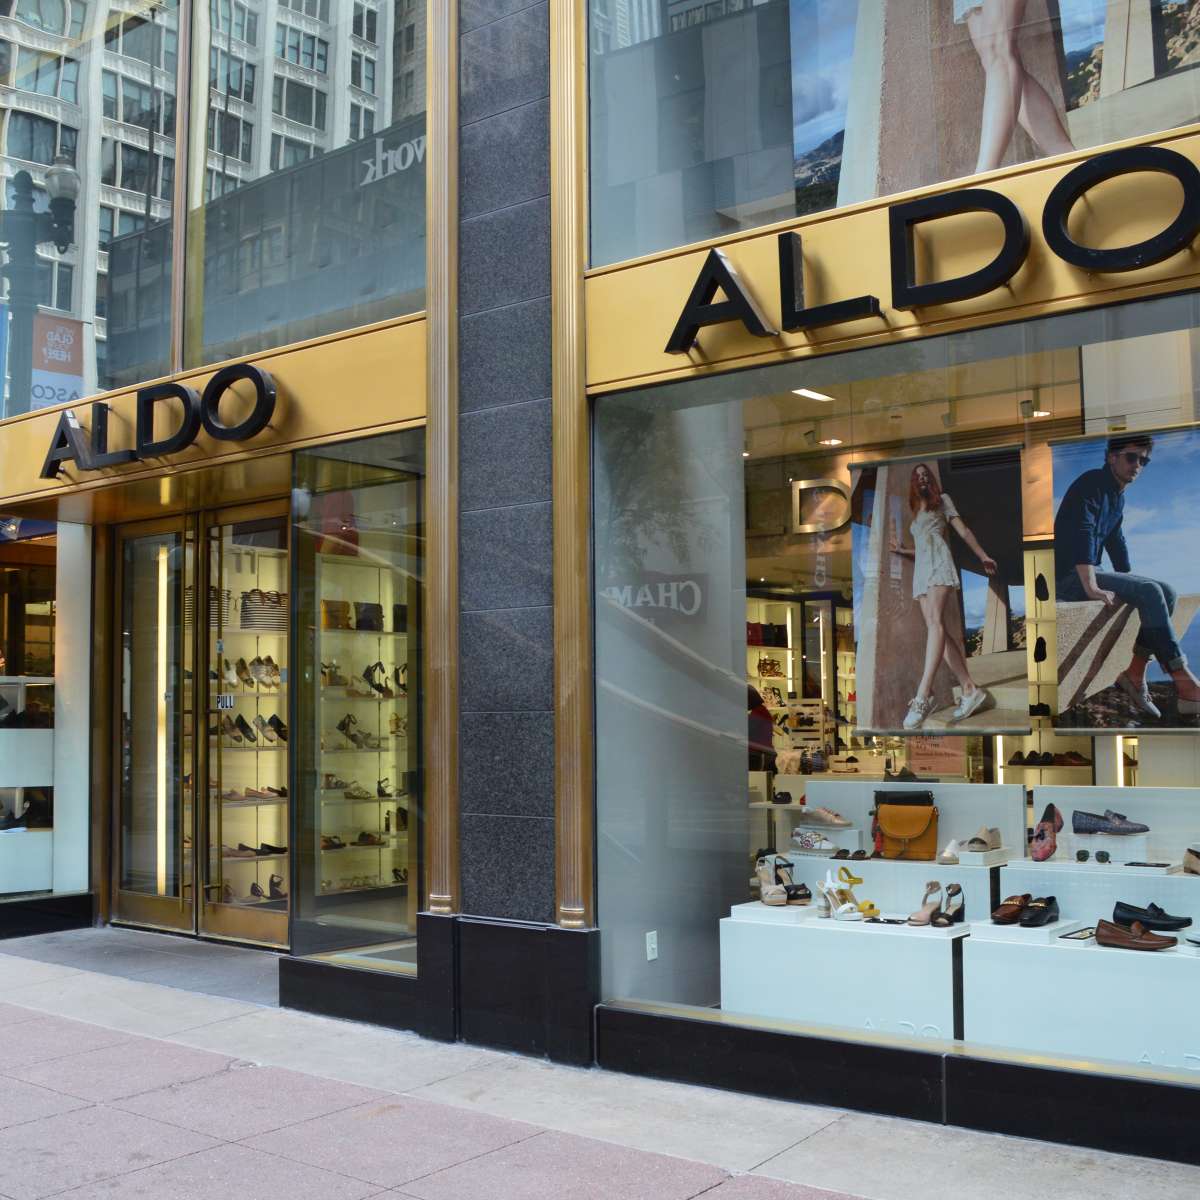 Aldo Shoes | Loop Chicago